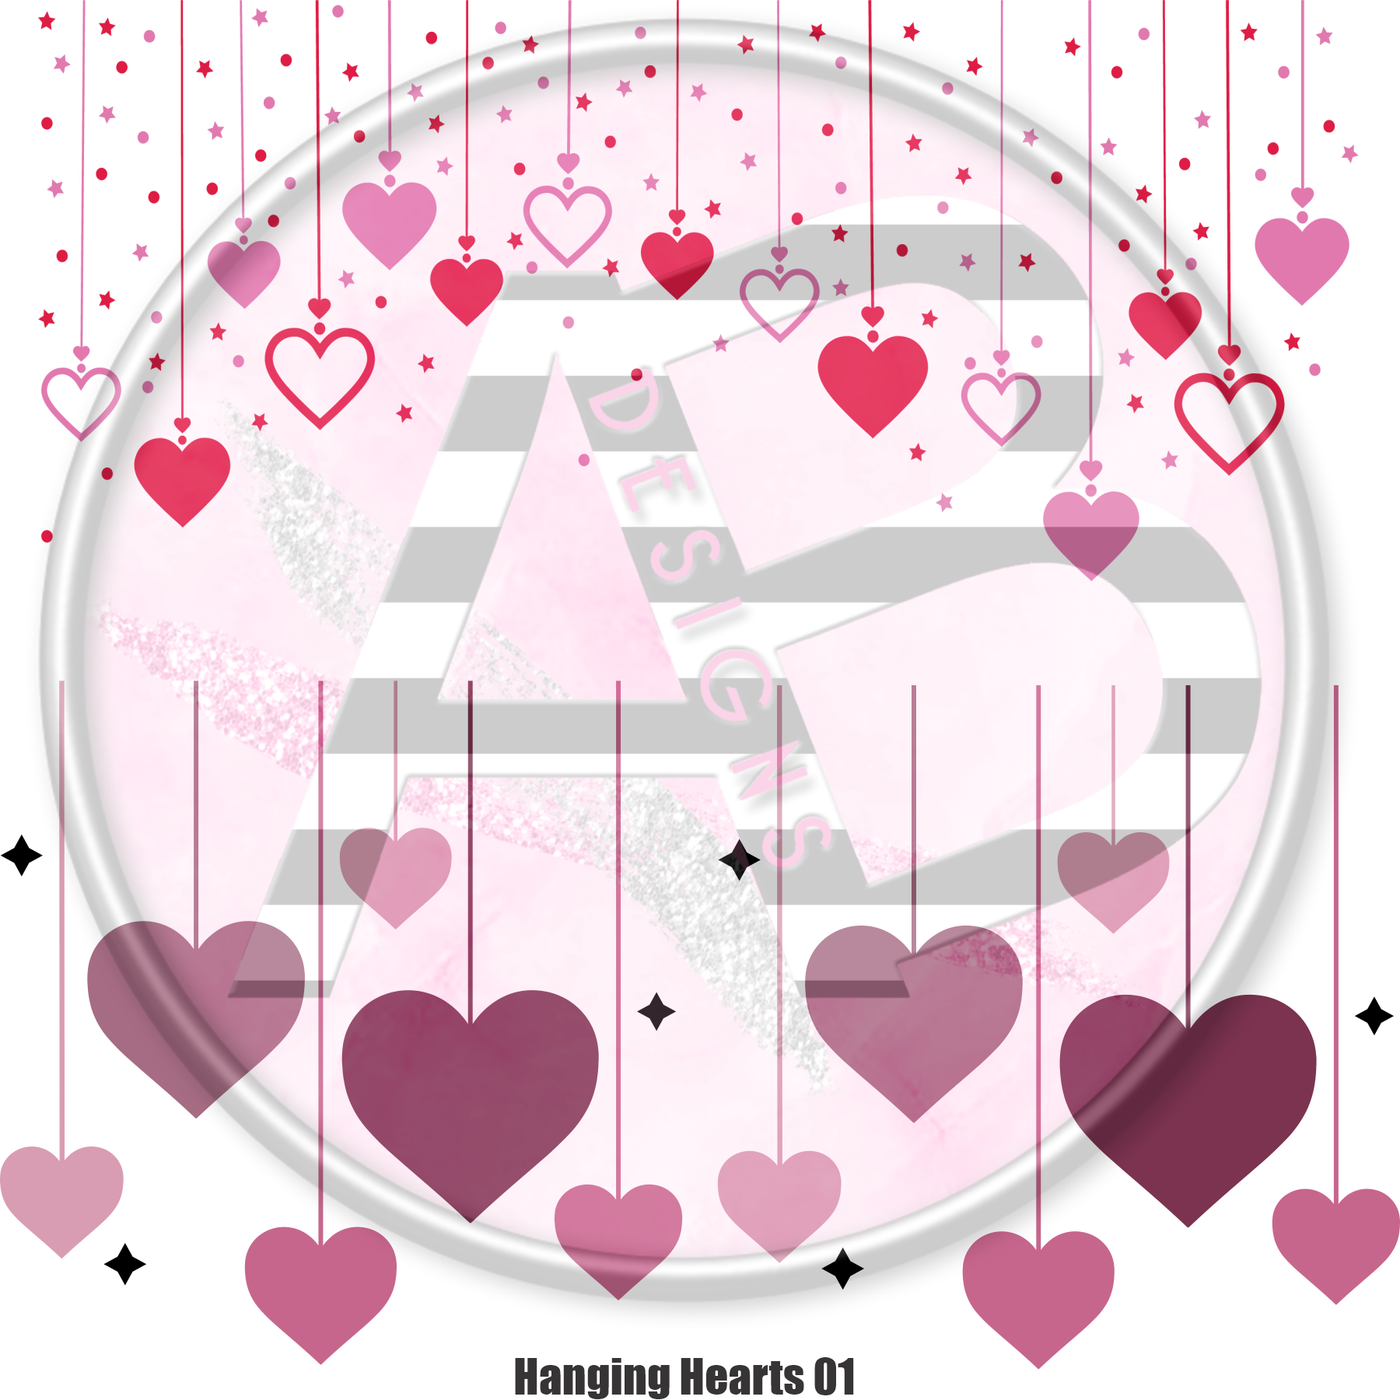 Hanging Hearts 01 Full Sheet 12x12 - Clear Sheet